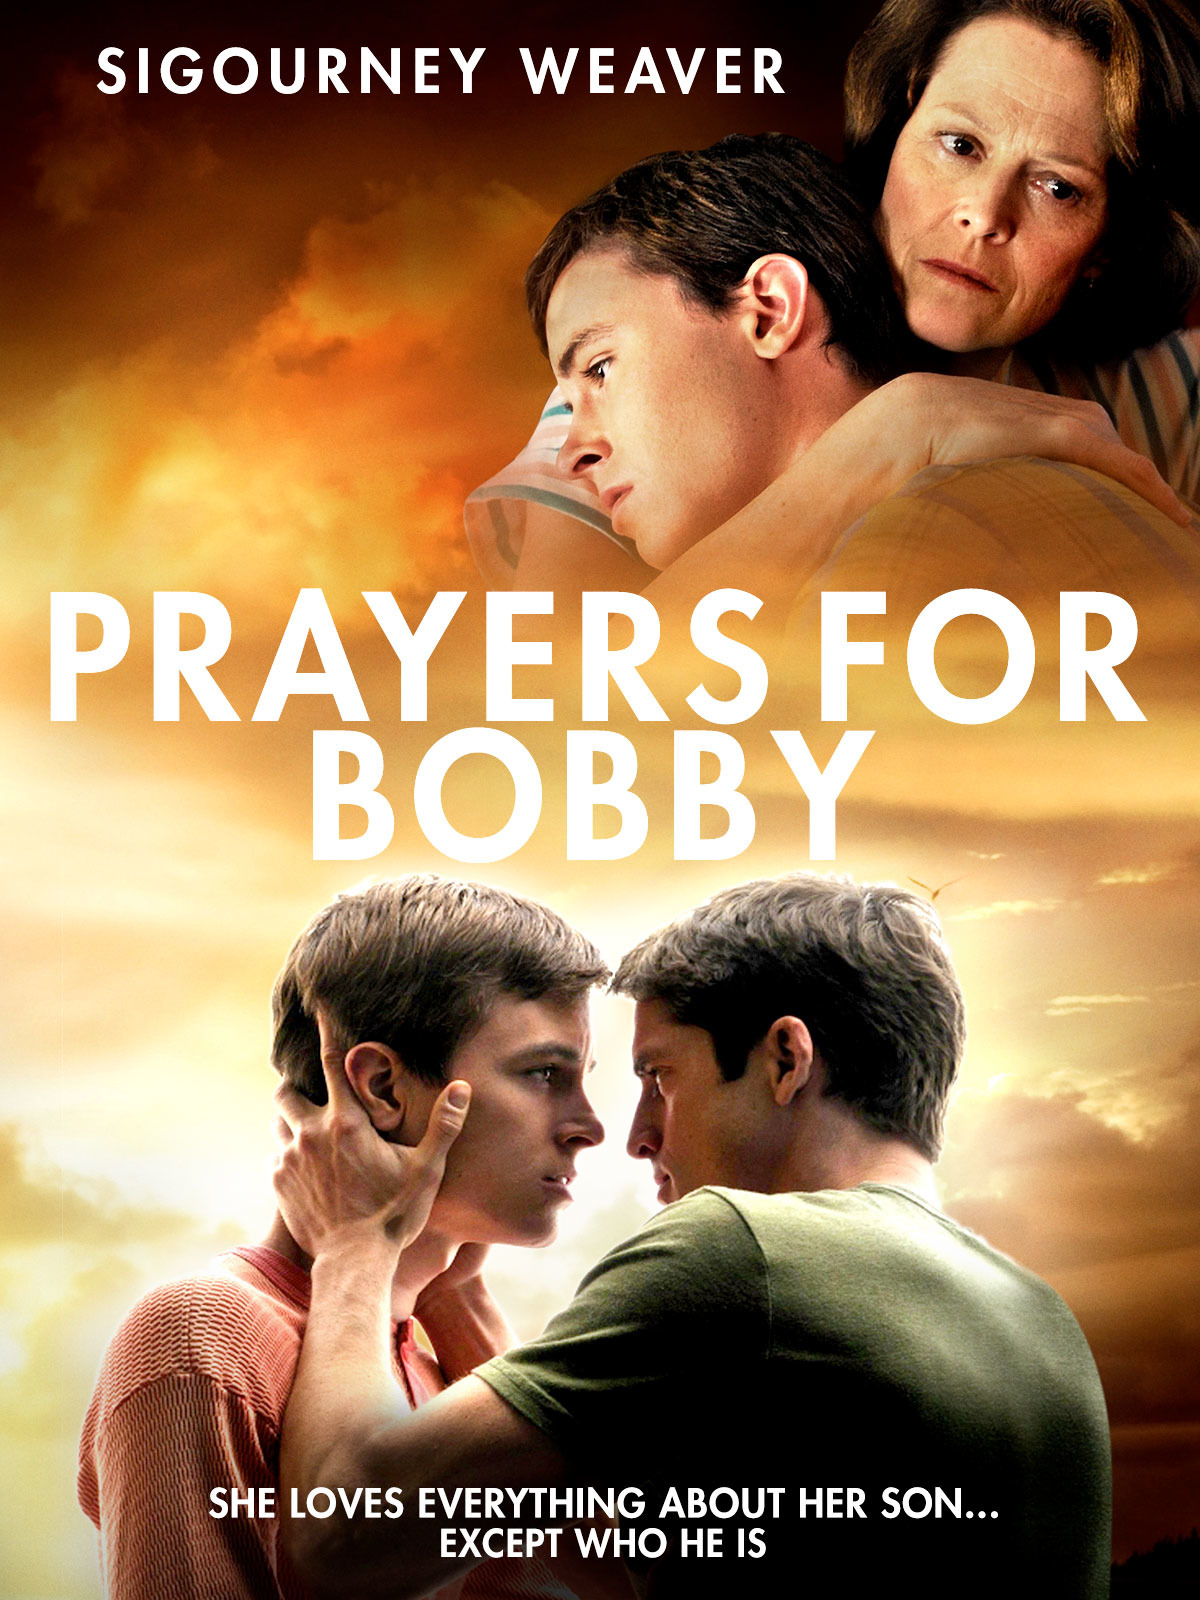 Prayers for Bobby (2009) starring Sigourney Weaver on DVD on DVD